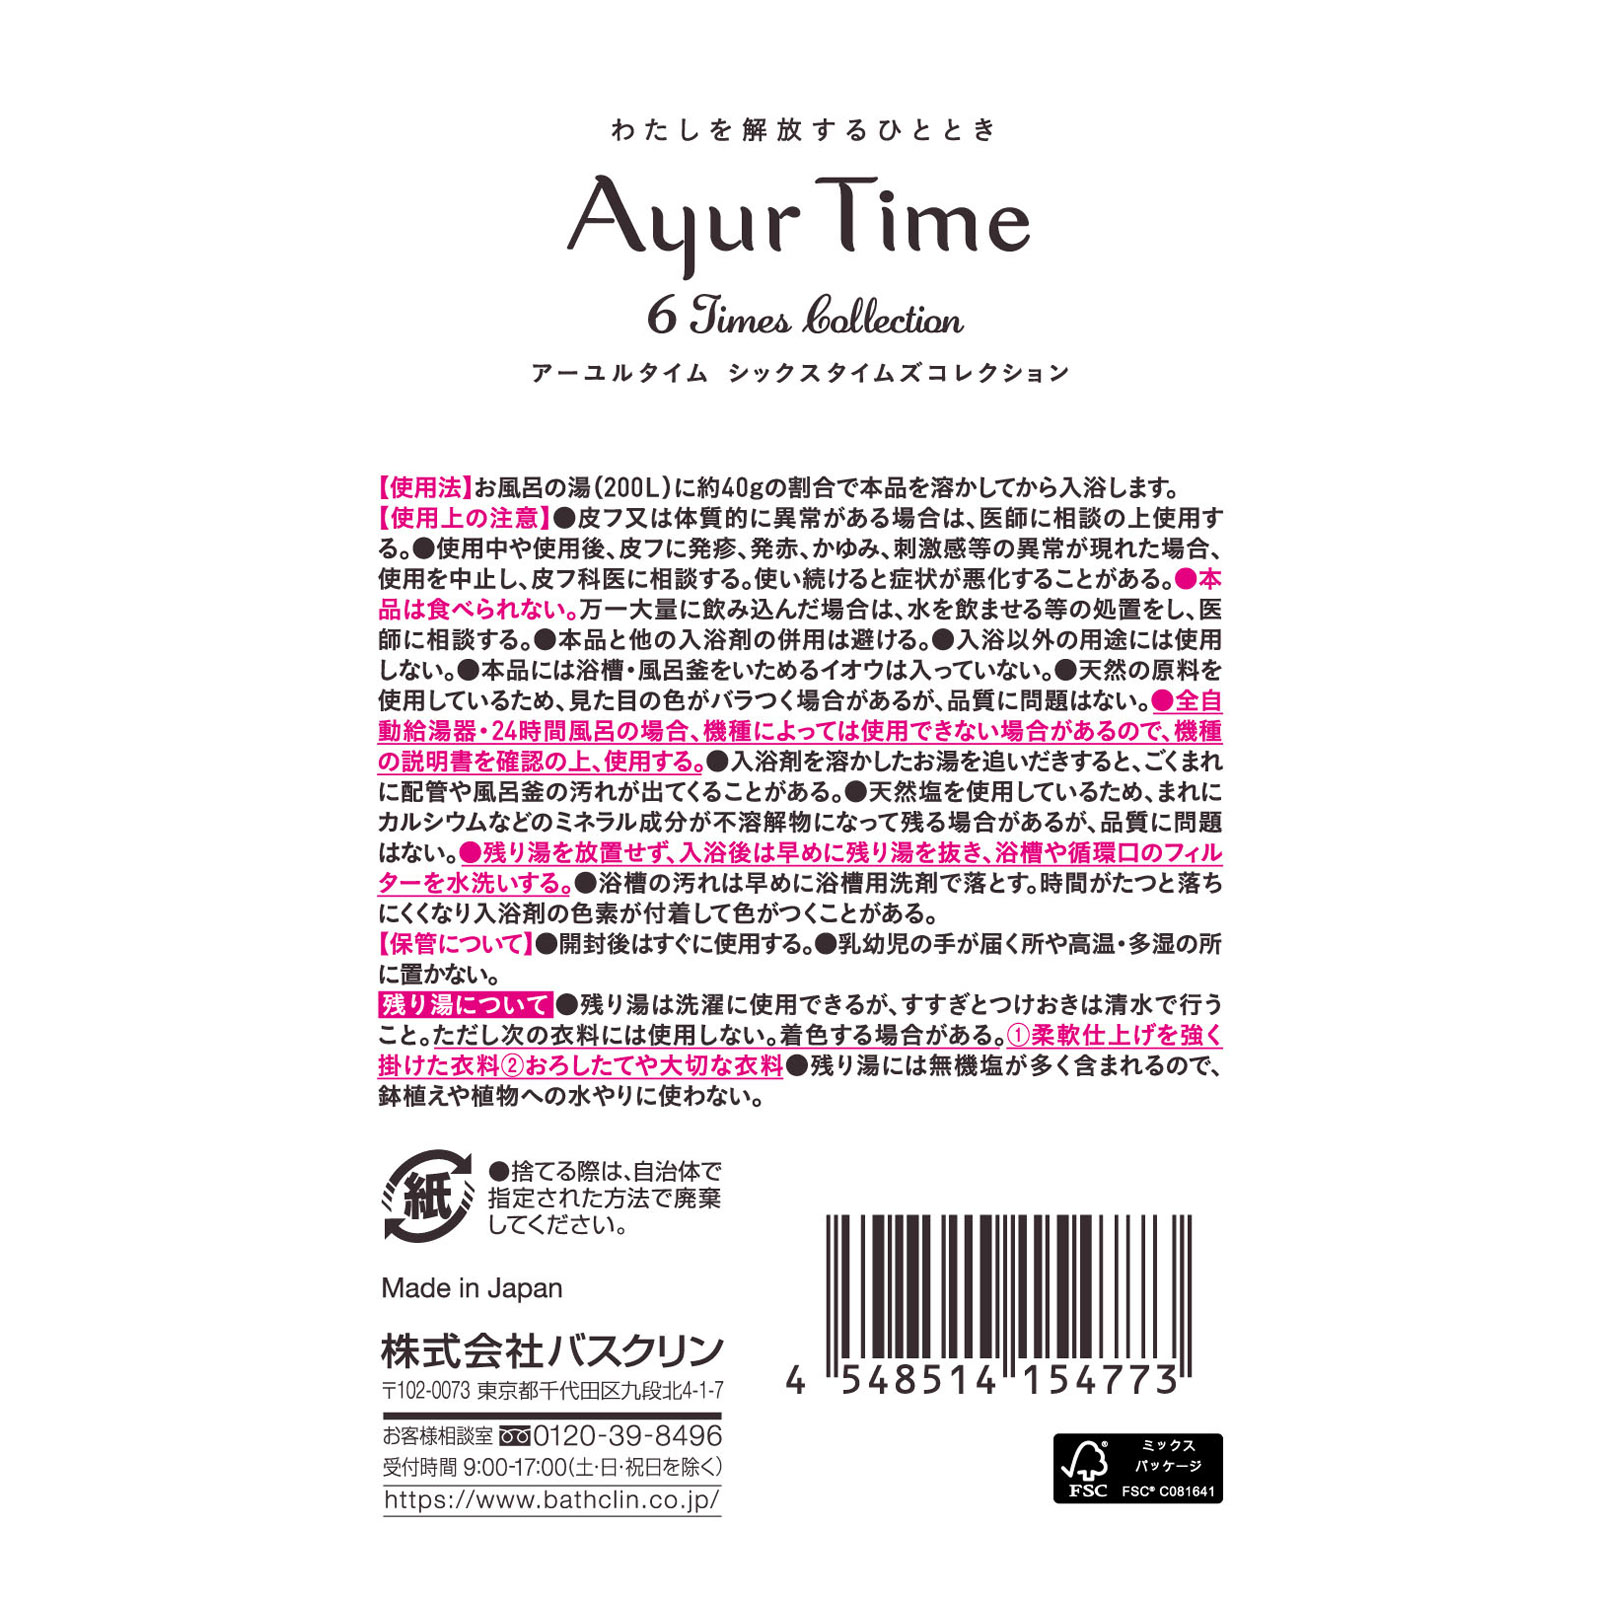 アーユルタイム シックスタイムズコレクション 40g×6包: ヘアケア・ボディケア Tomod's ONLINE SHOP